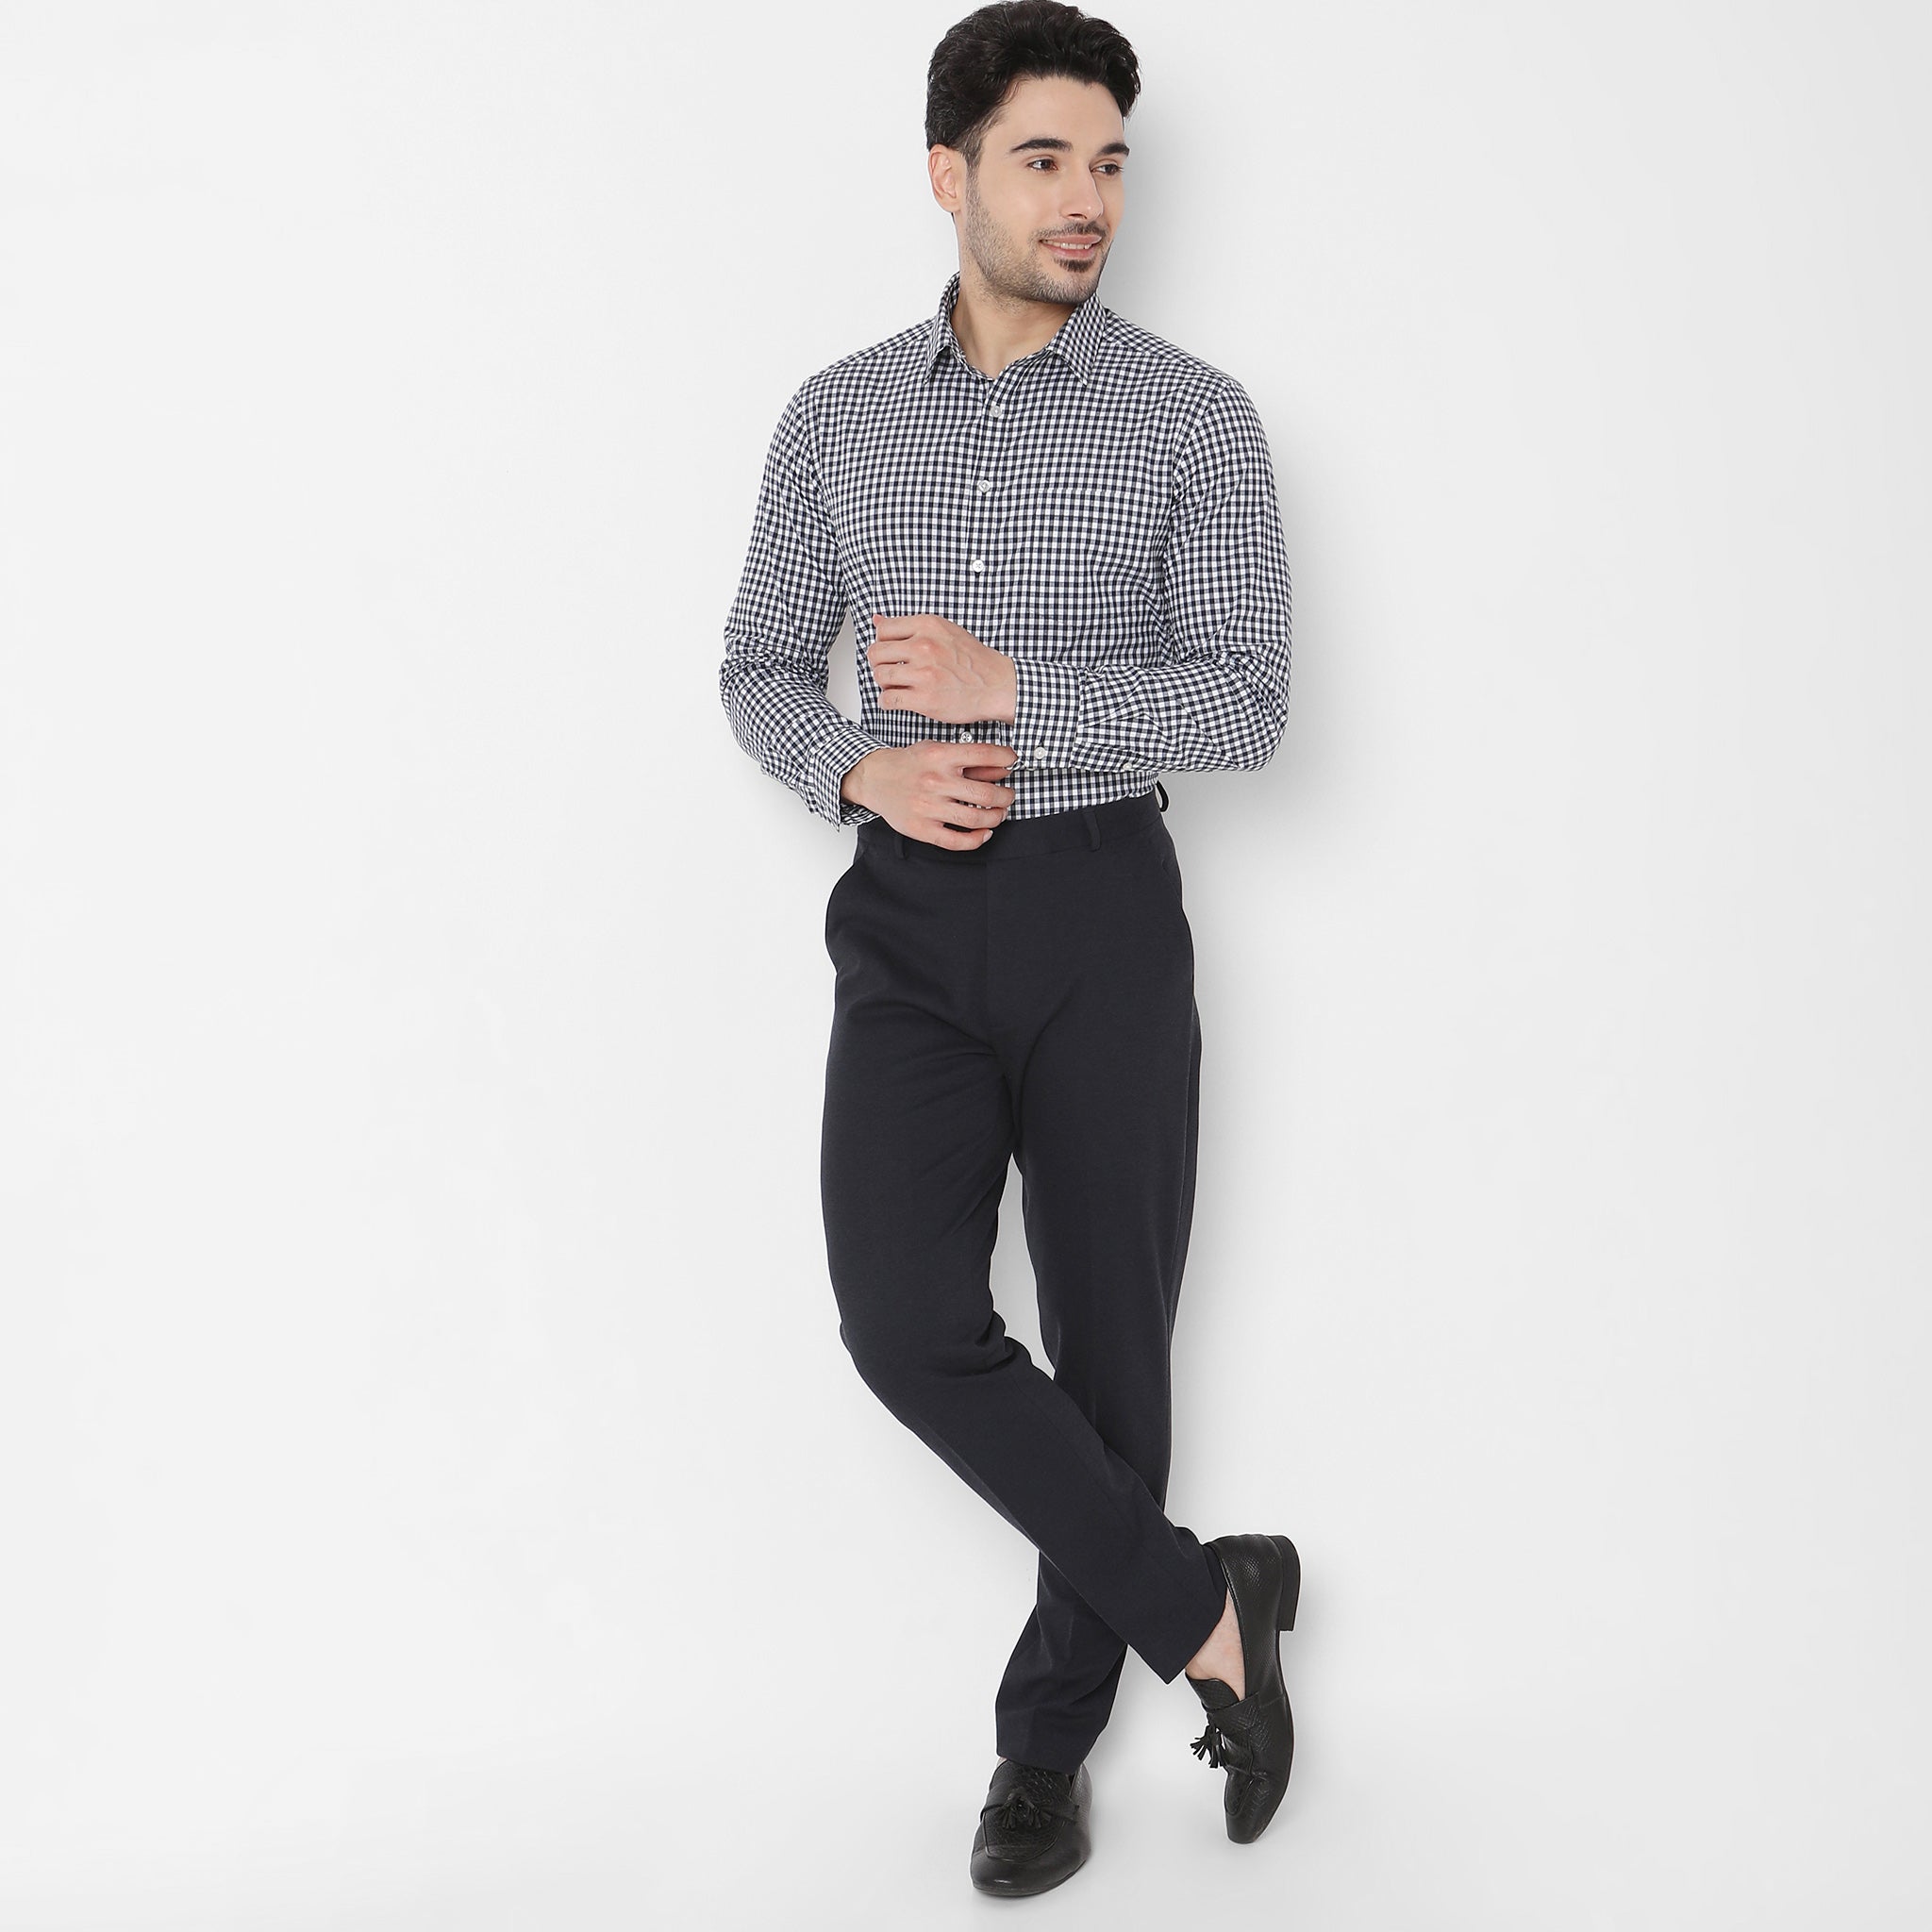 Latest Men Office Wear Pants Design||Men Formal Pants||New Pants For Men  Designs | Business casual attire for men, Mens fashion blazer, Dress suits  for men